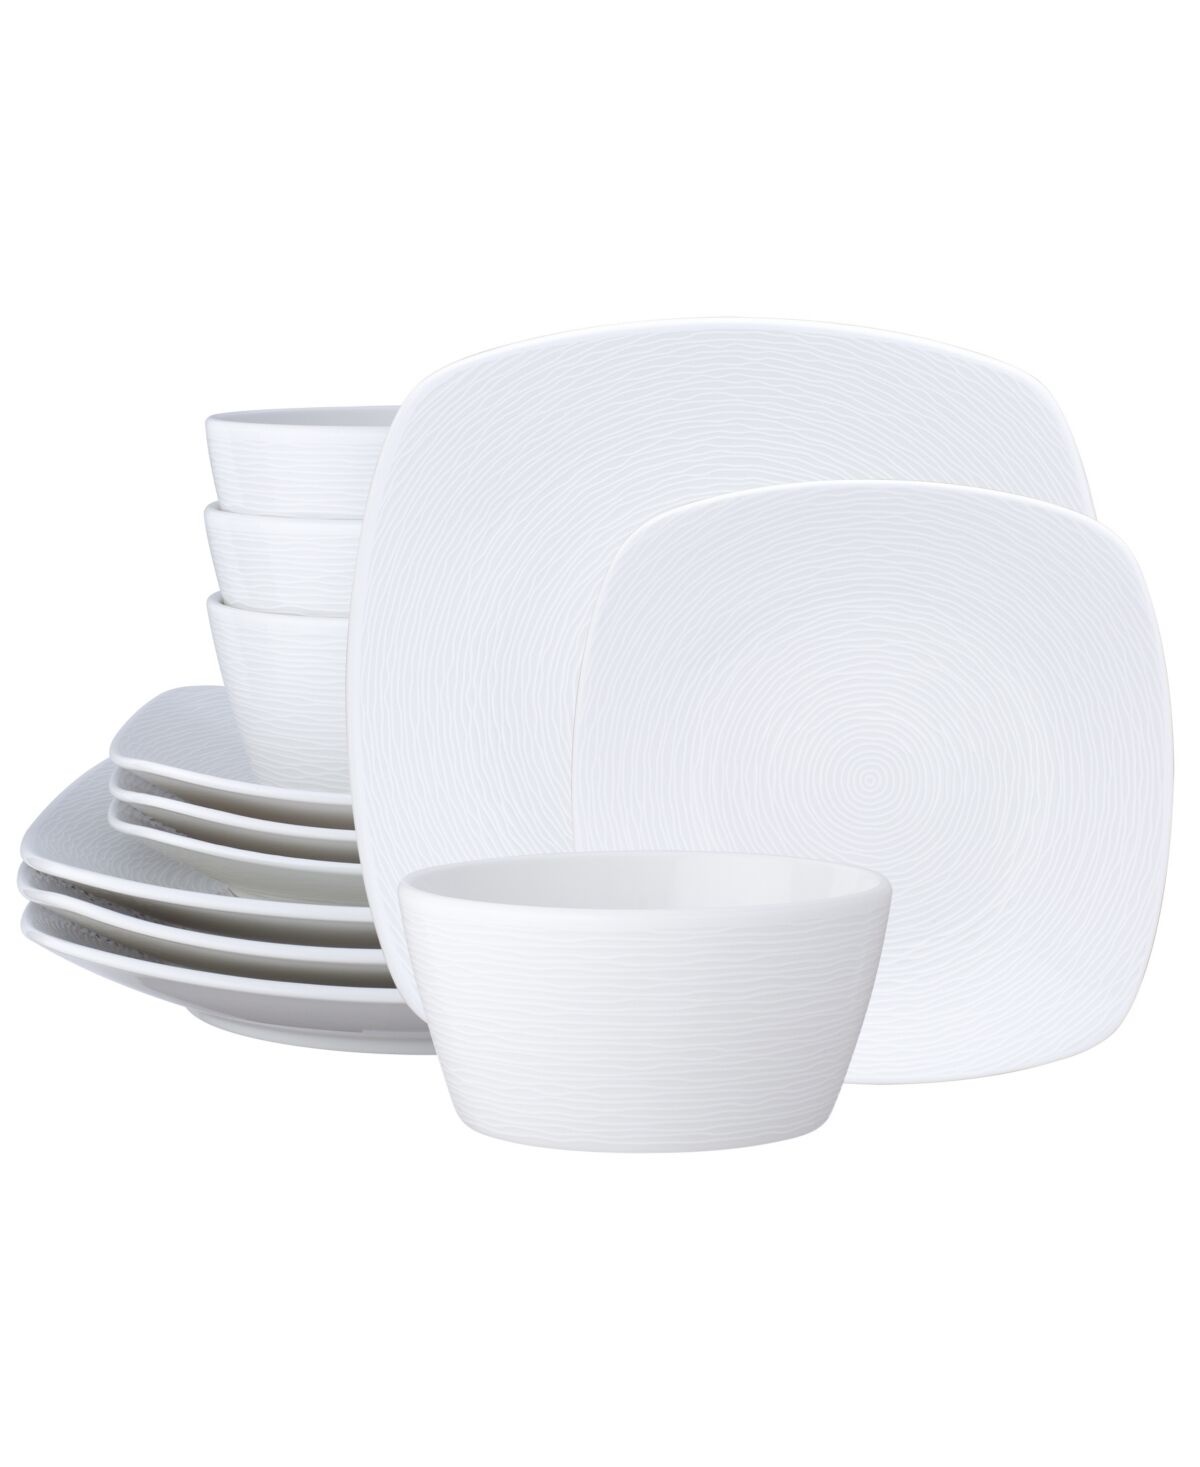 Noritake Non Swirl Square Set 12 Piece Dinnerware Set, Service For 4 - White